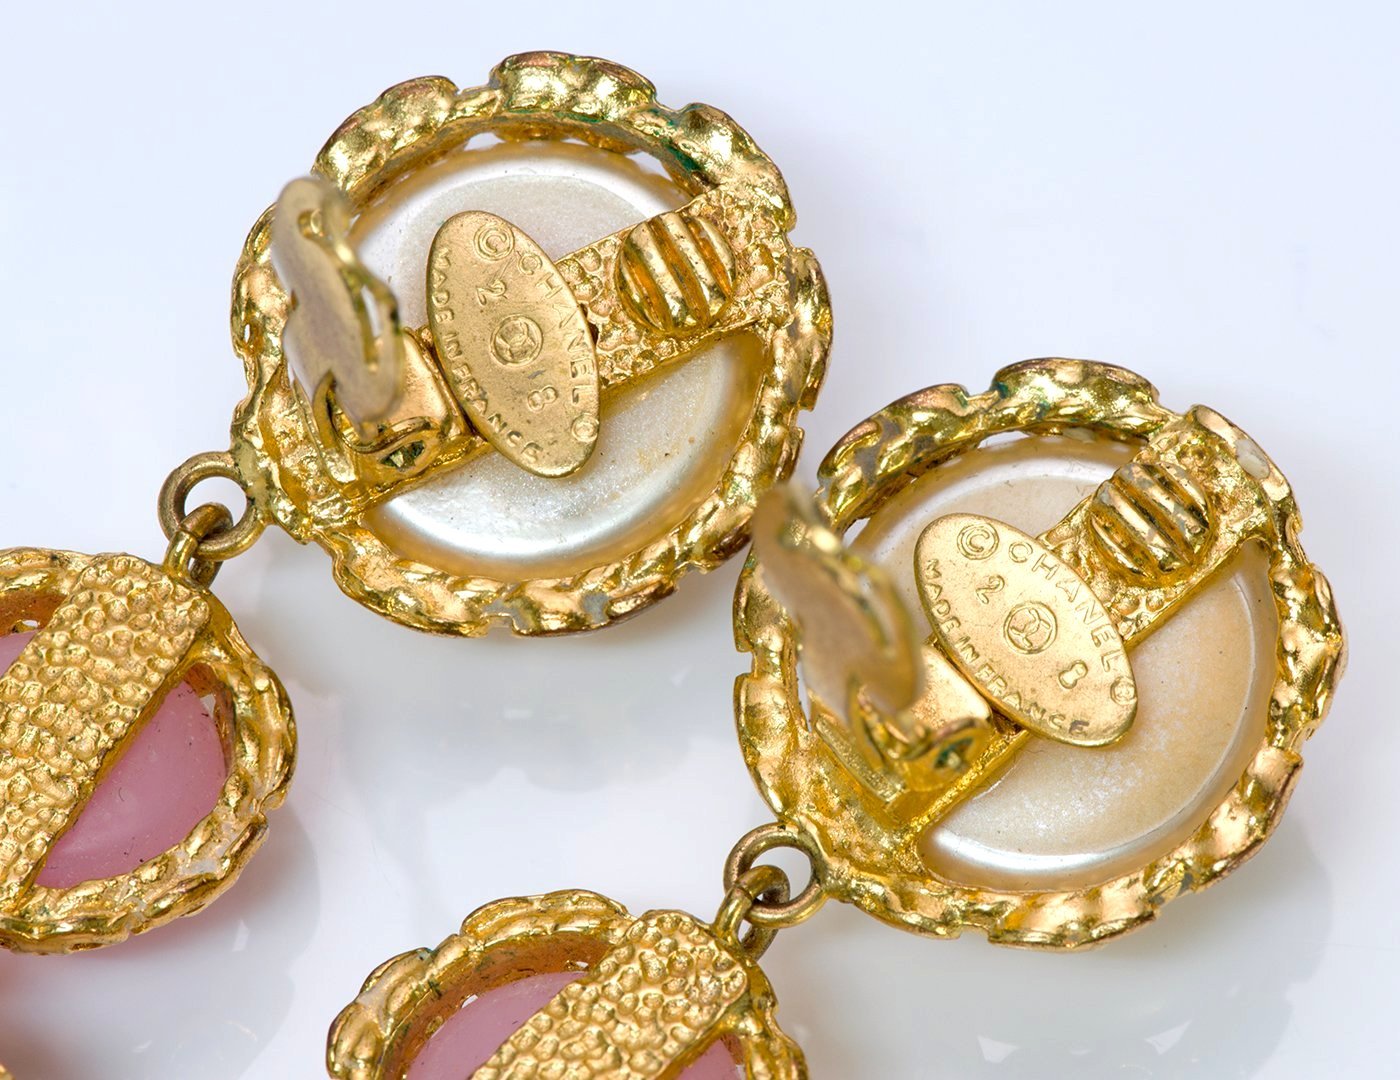 Vintage 1991 Chanel Paris CC Maison Gripoix Pink Heart Glass Pearl Earrings